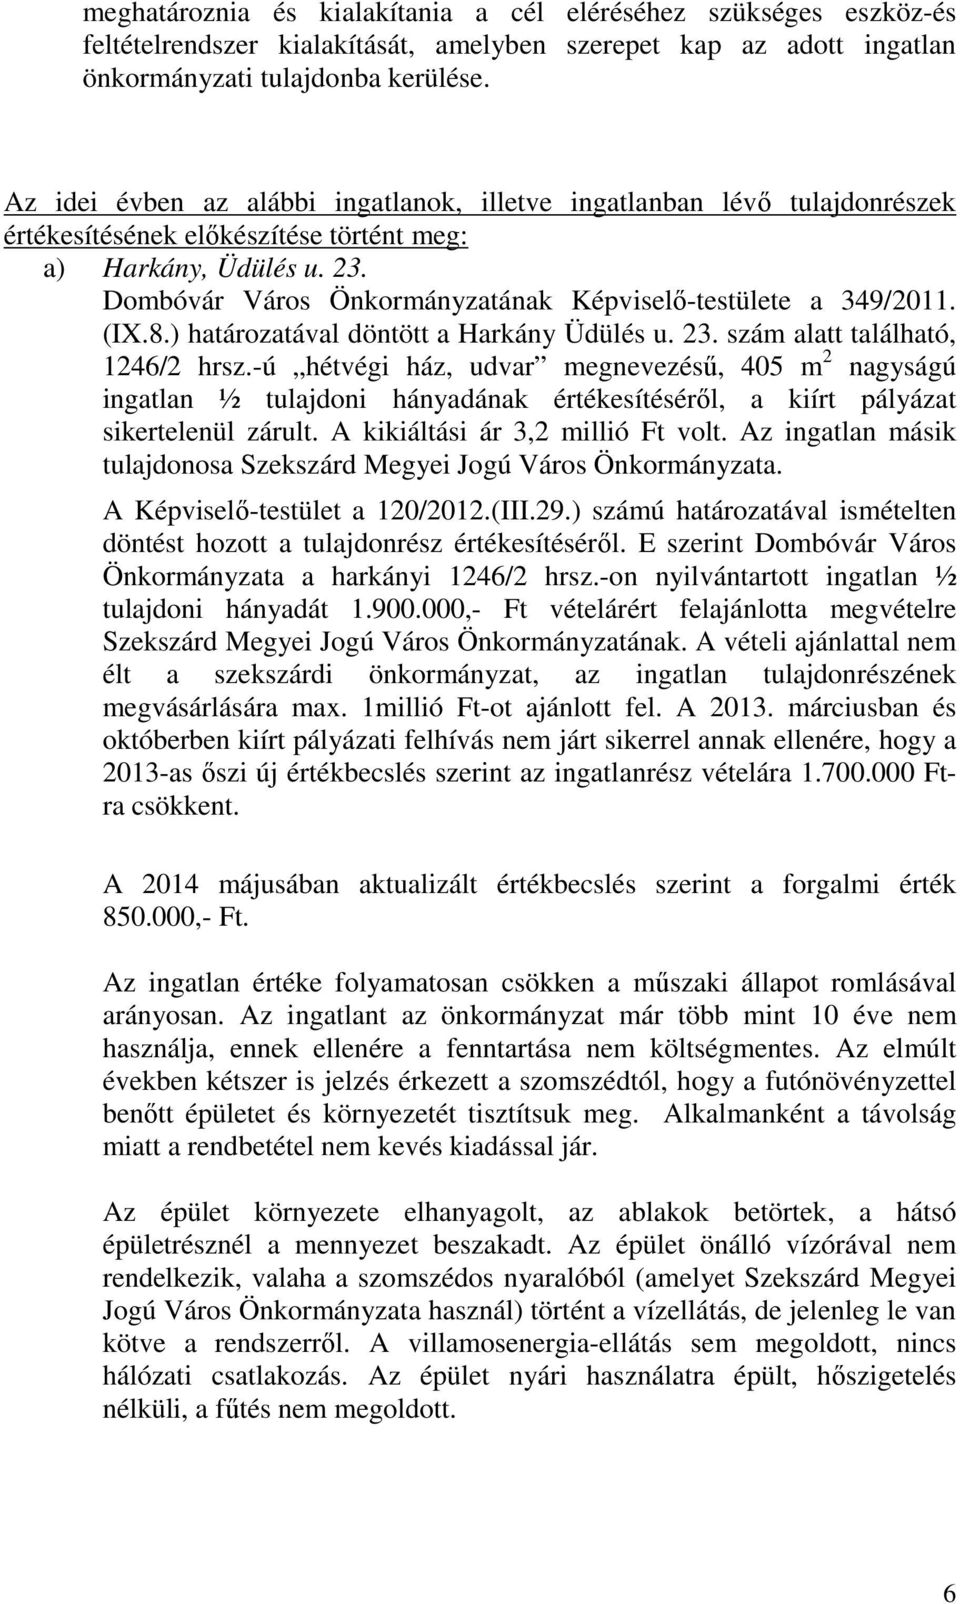 Dombóvár Város Önkormányzatának Képviselő-testülete a 349/2011. (IX.8.) határozatával döntött a Harkány Üdülés u. 23. szám alatt található, 1246/2 hrsz.